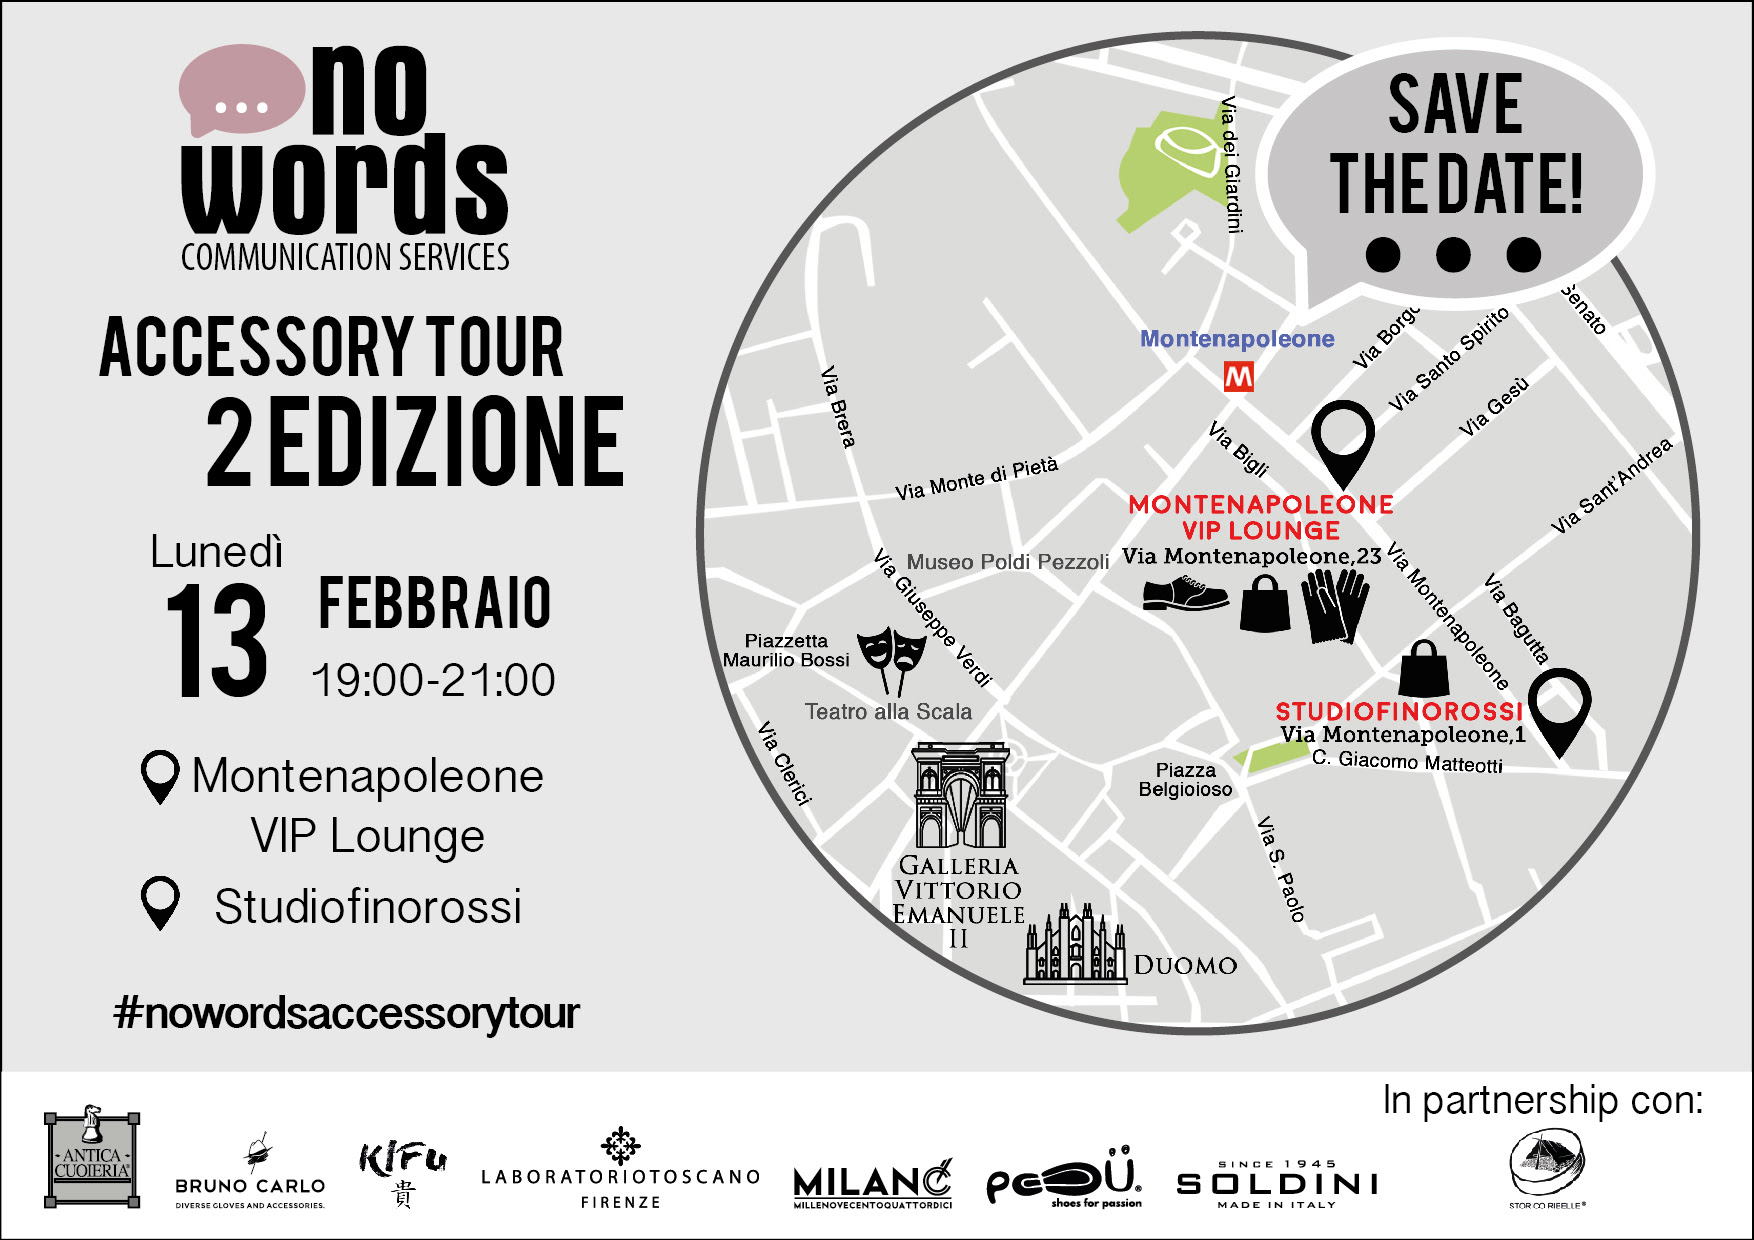  Riparte il No Words Accessory Tour: prima tappa lunedì 13 febbraio in Via Montenapoleone a Milano